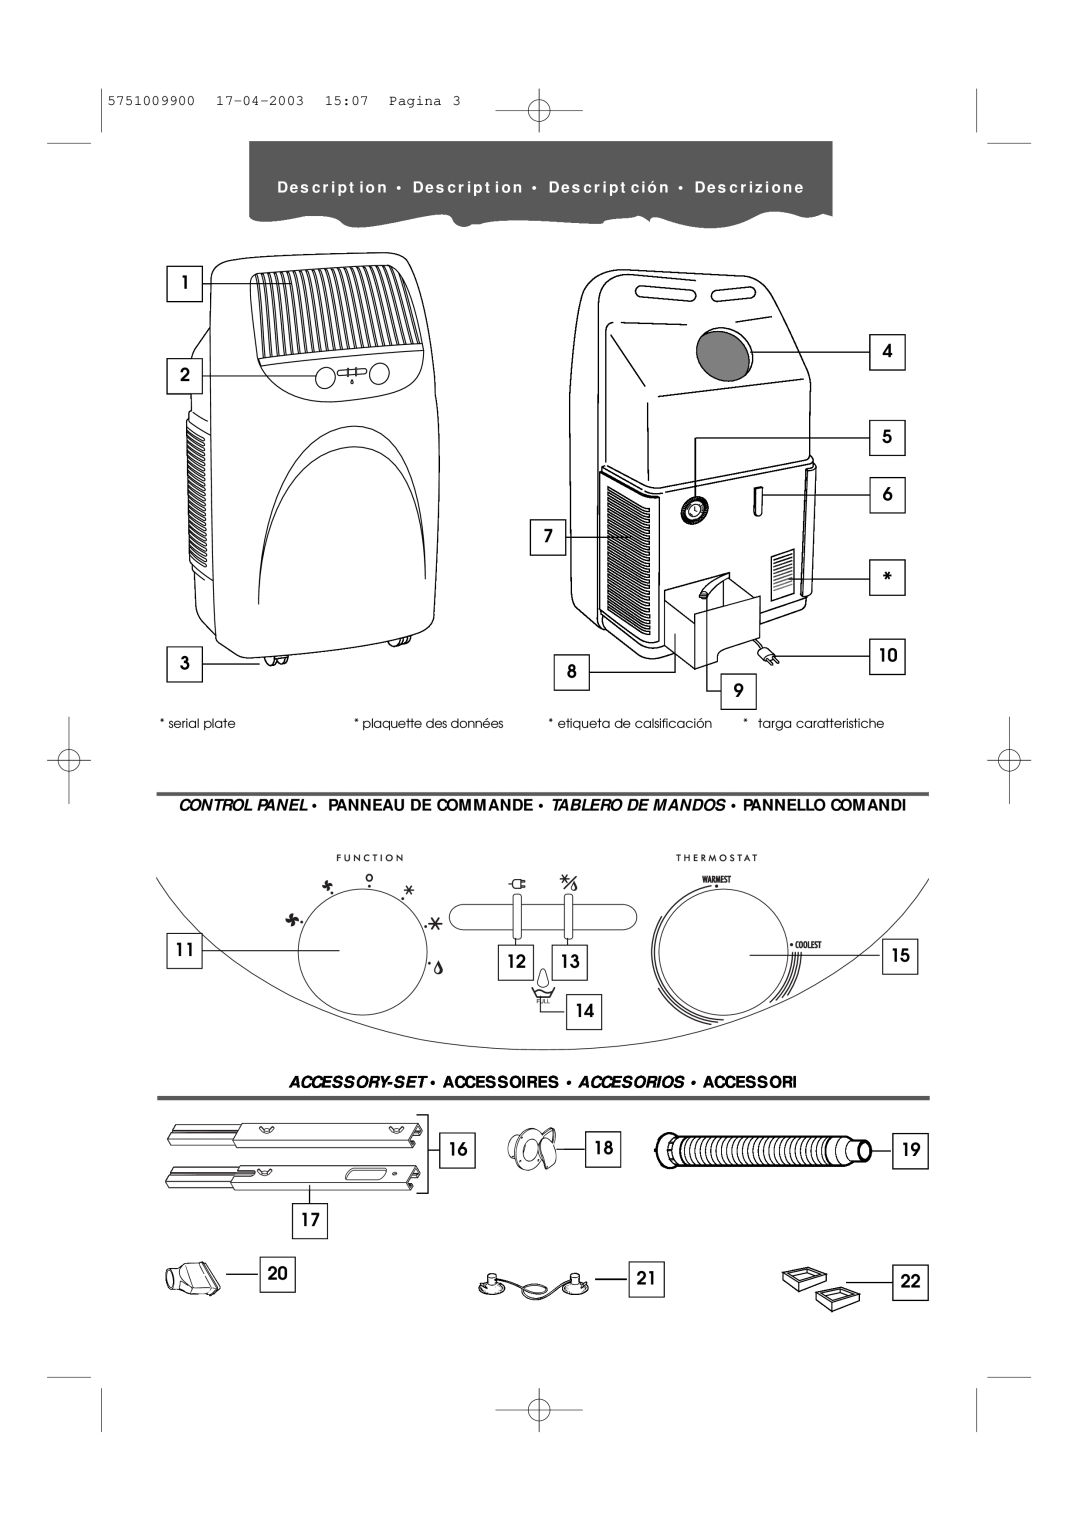 DeLonghi Pac 1000 manual serial plate, plaquette des données, etiqueta de calsificación, targa caratteristiche 